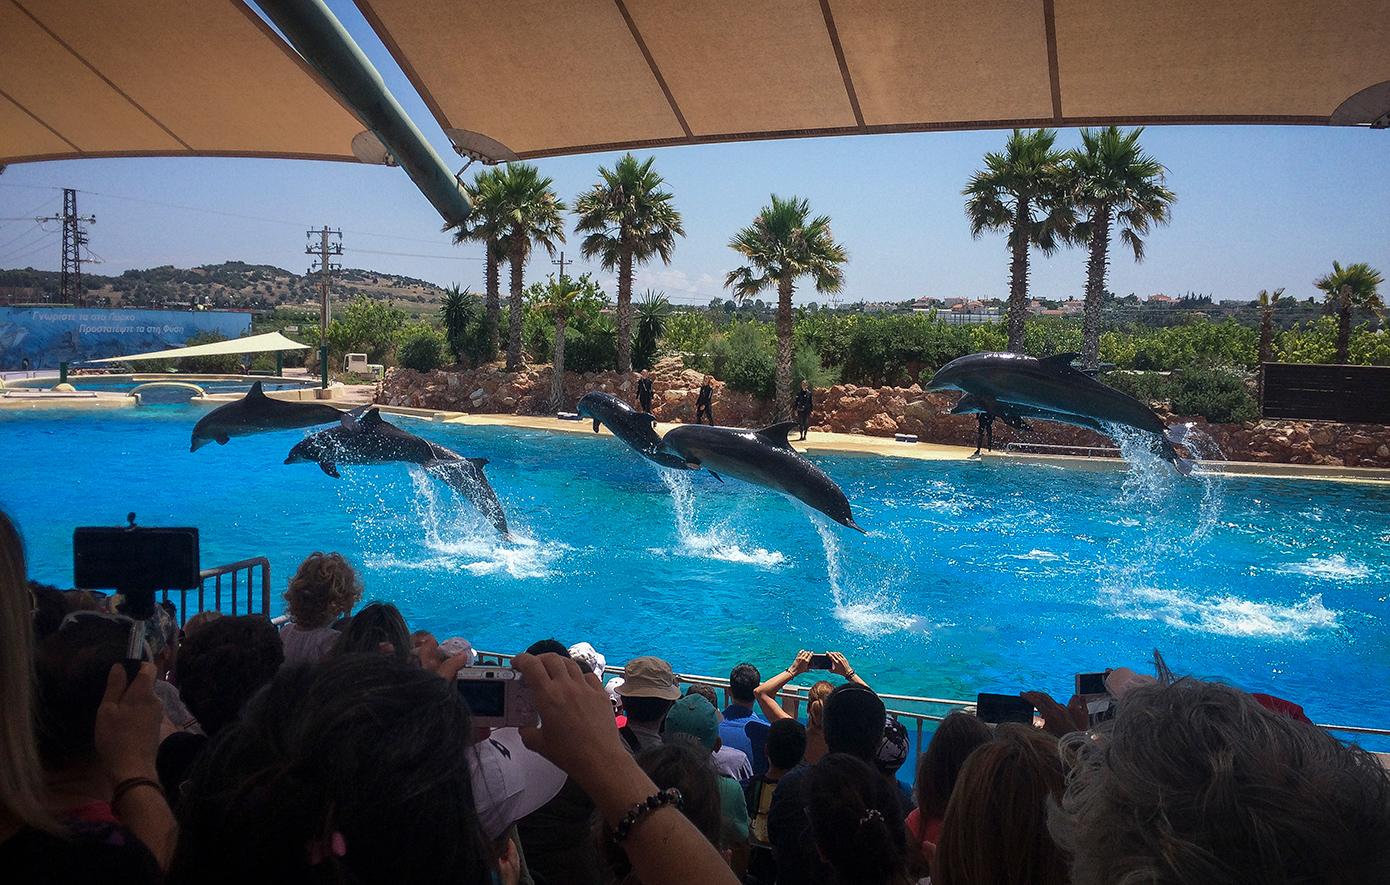 Καταδίκη για το Αττικό Ζωολογικό Πάρκο &#8211; Έξι μήνες φυλάκιση με αναστολή στην ιδιοκτησία για τις παραστάσεις με τα δελφίνια